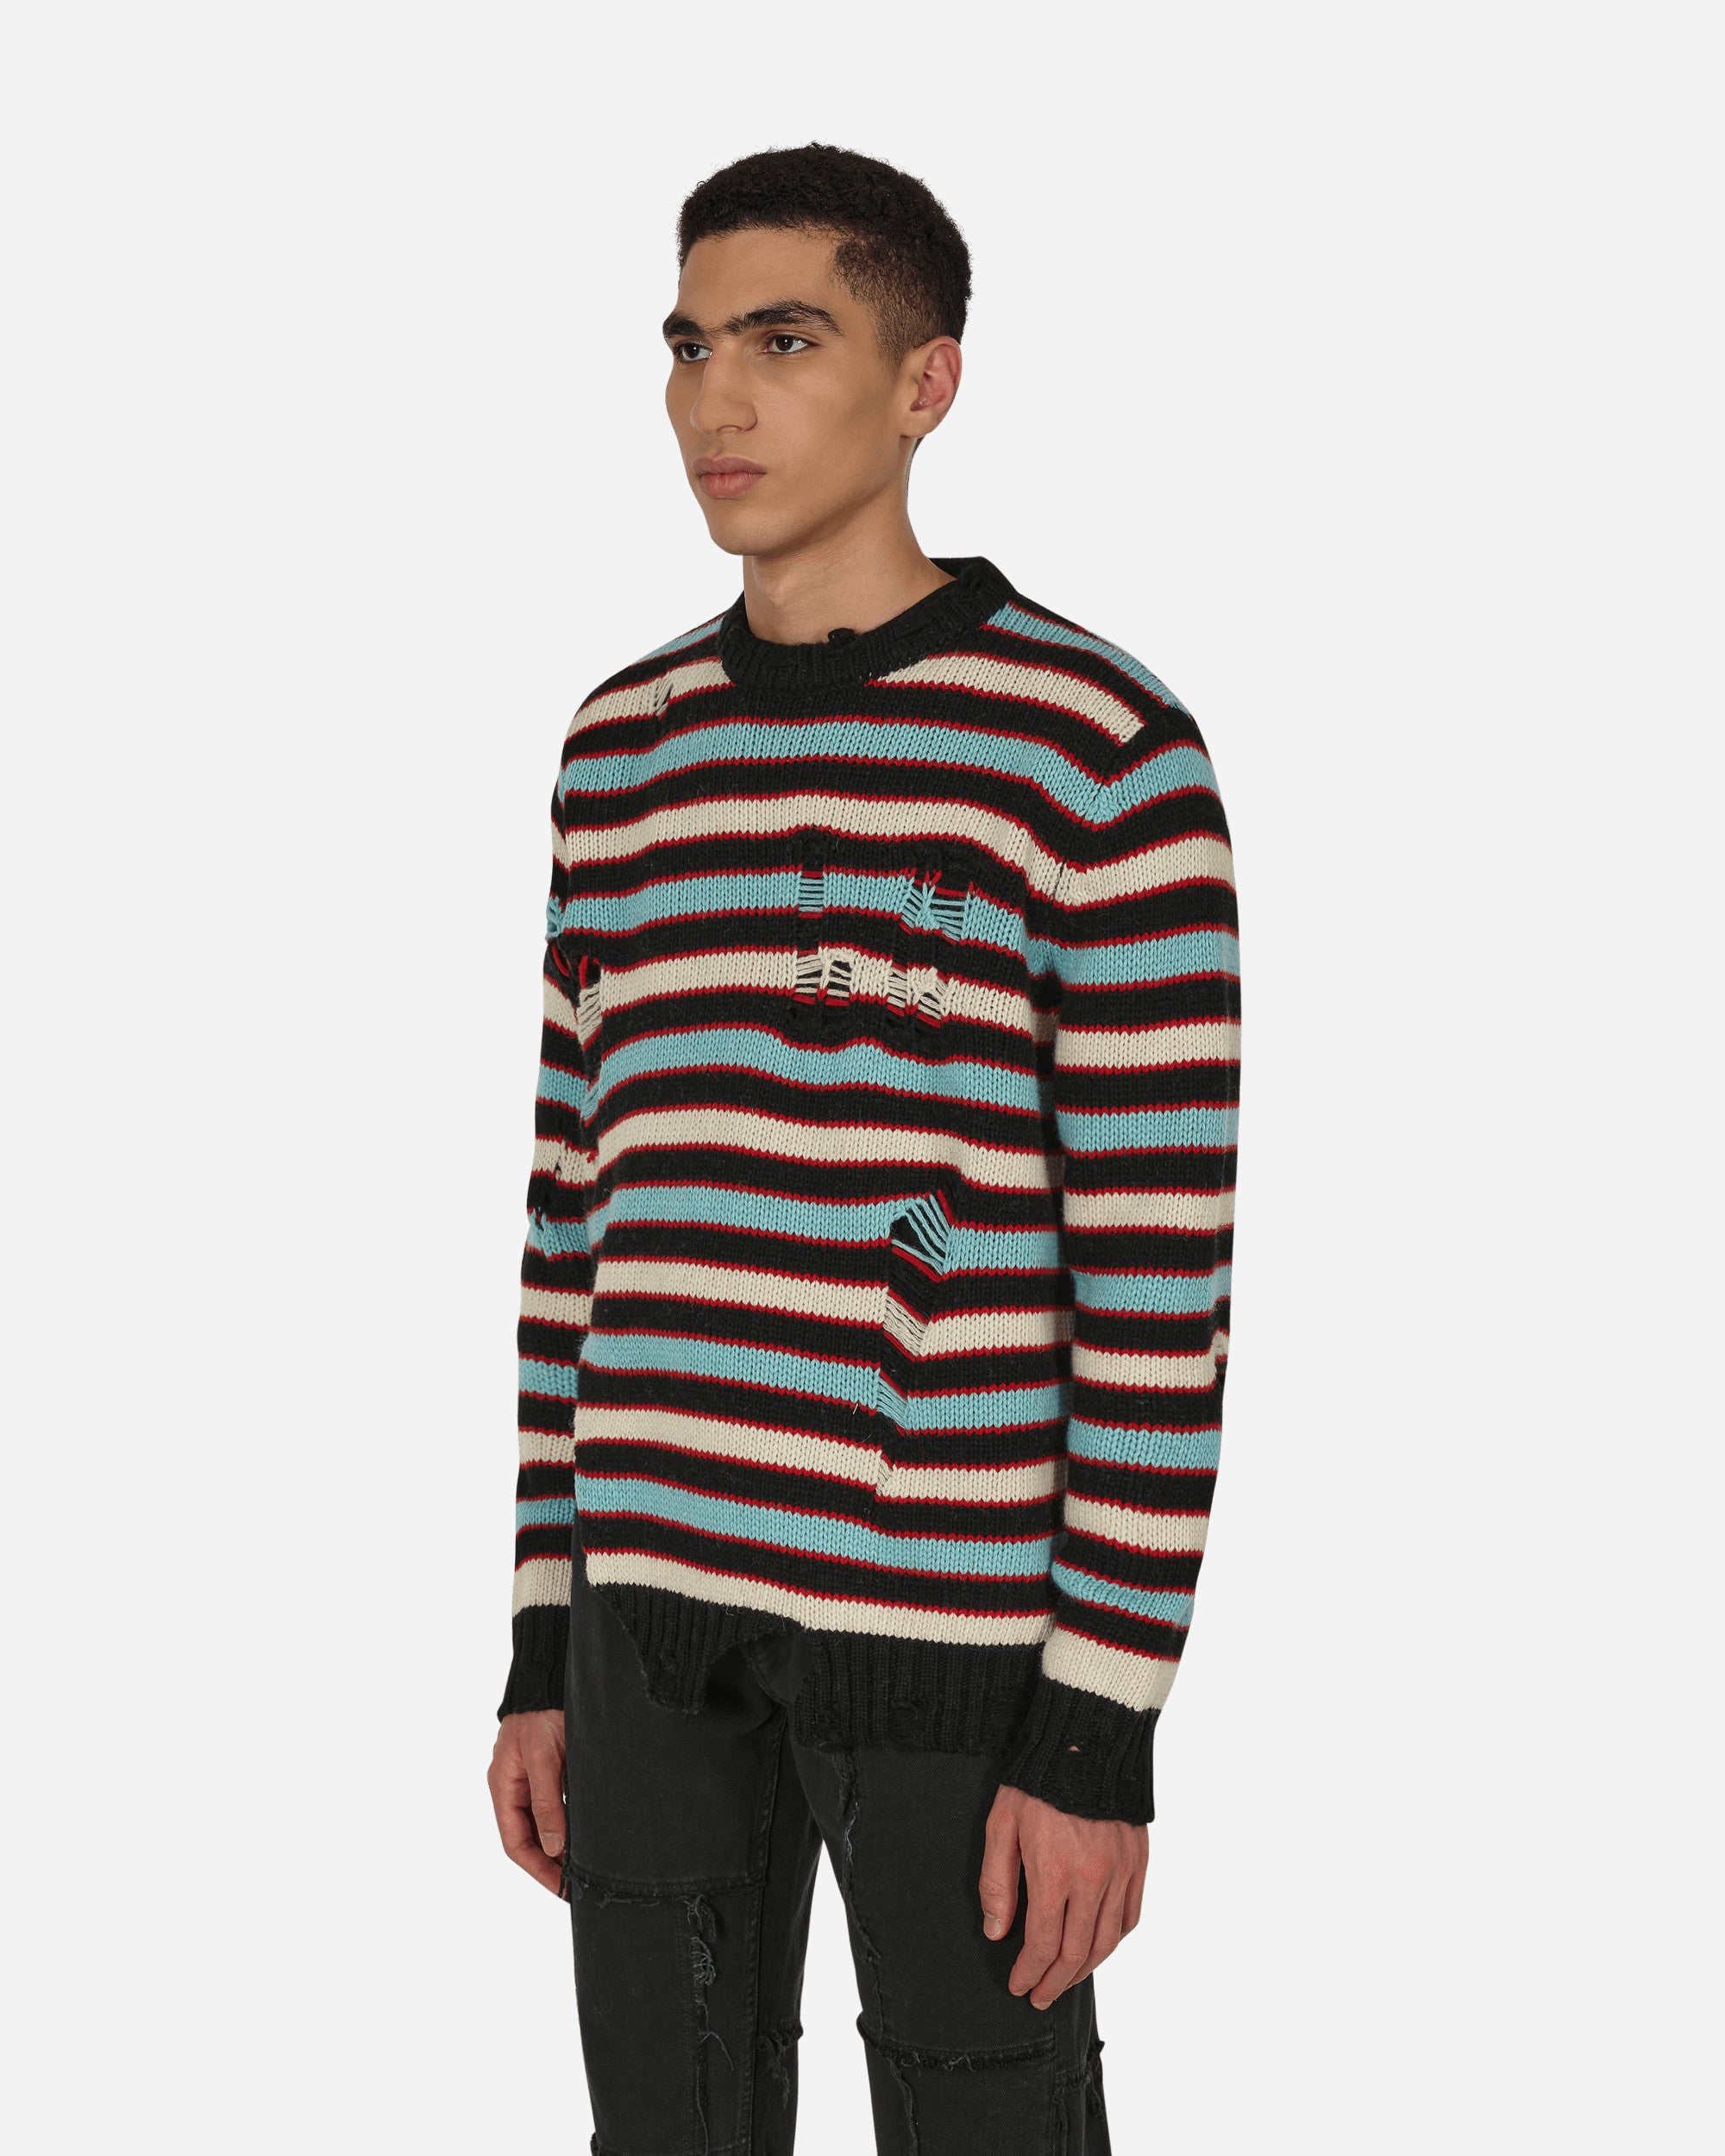 Charles Jeffrey Loverboy Mega Shred Stripe Jumper Multicoloured Knitwears Sweaters CJLAW22MSSJ MULCOL